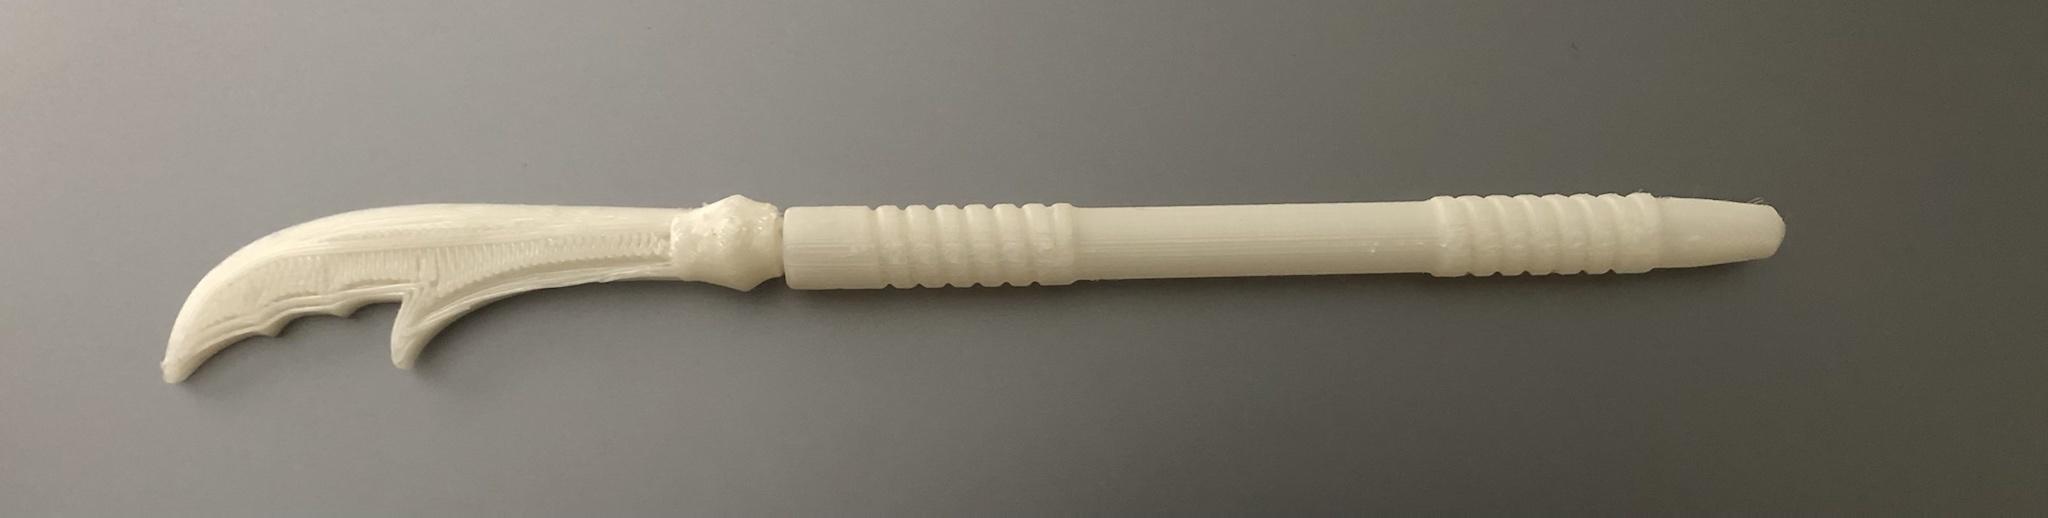 Polearm pen 3d model